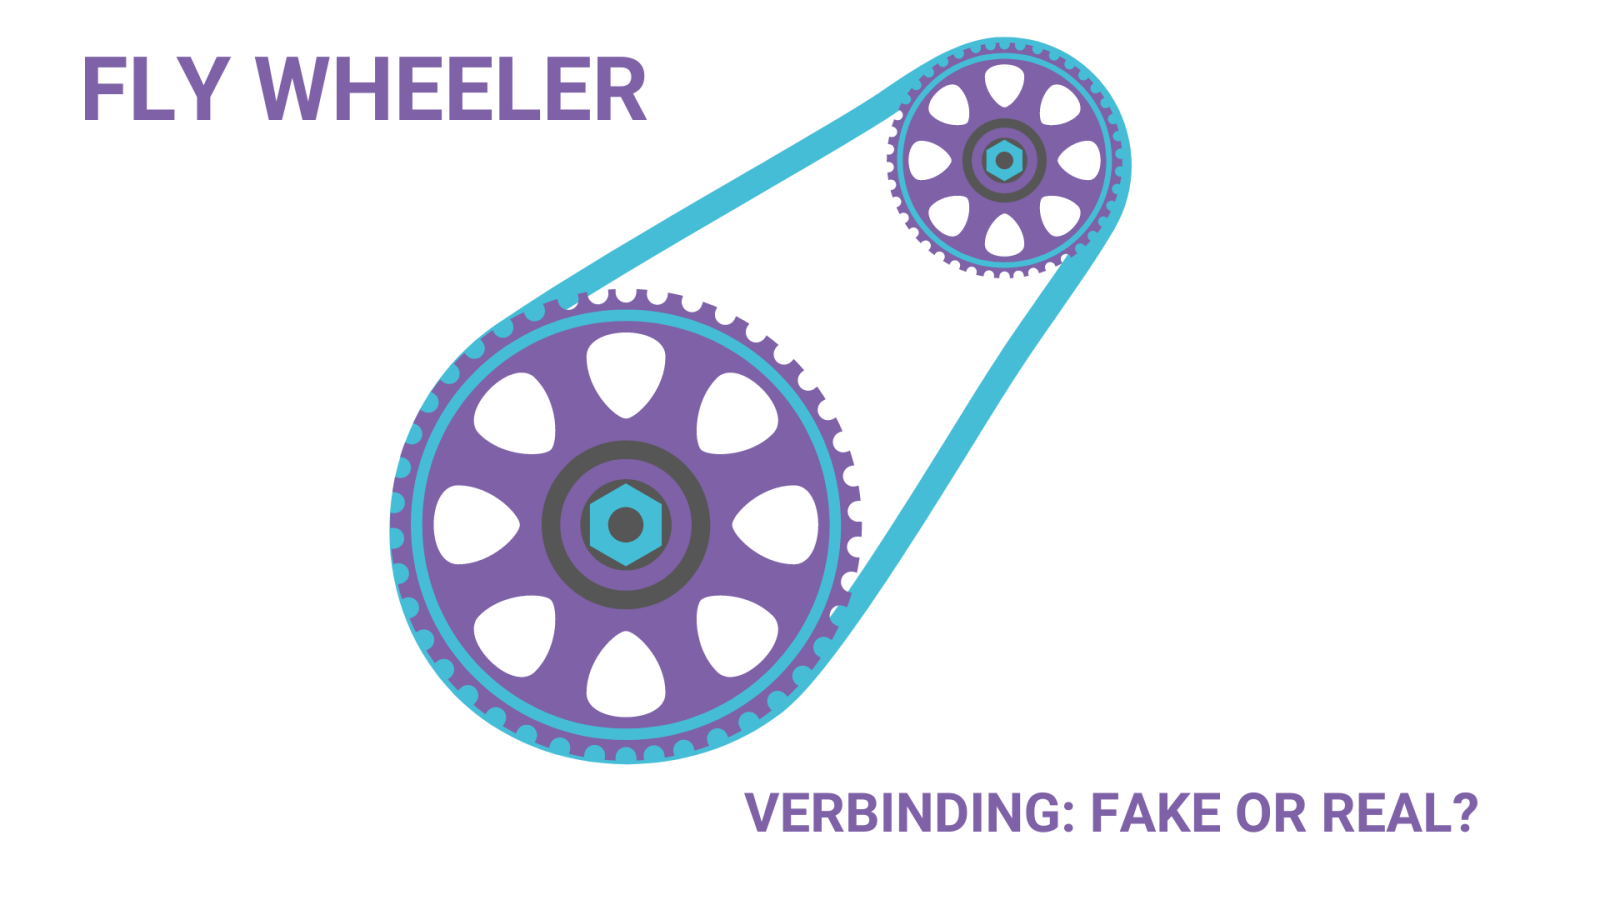 5e FLY wheeler: Verbinding: fake or real?